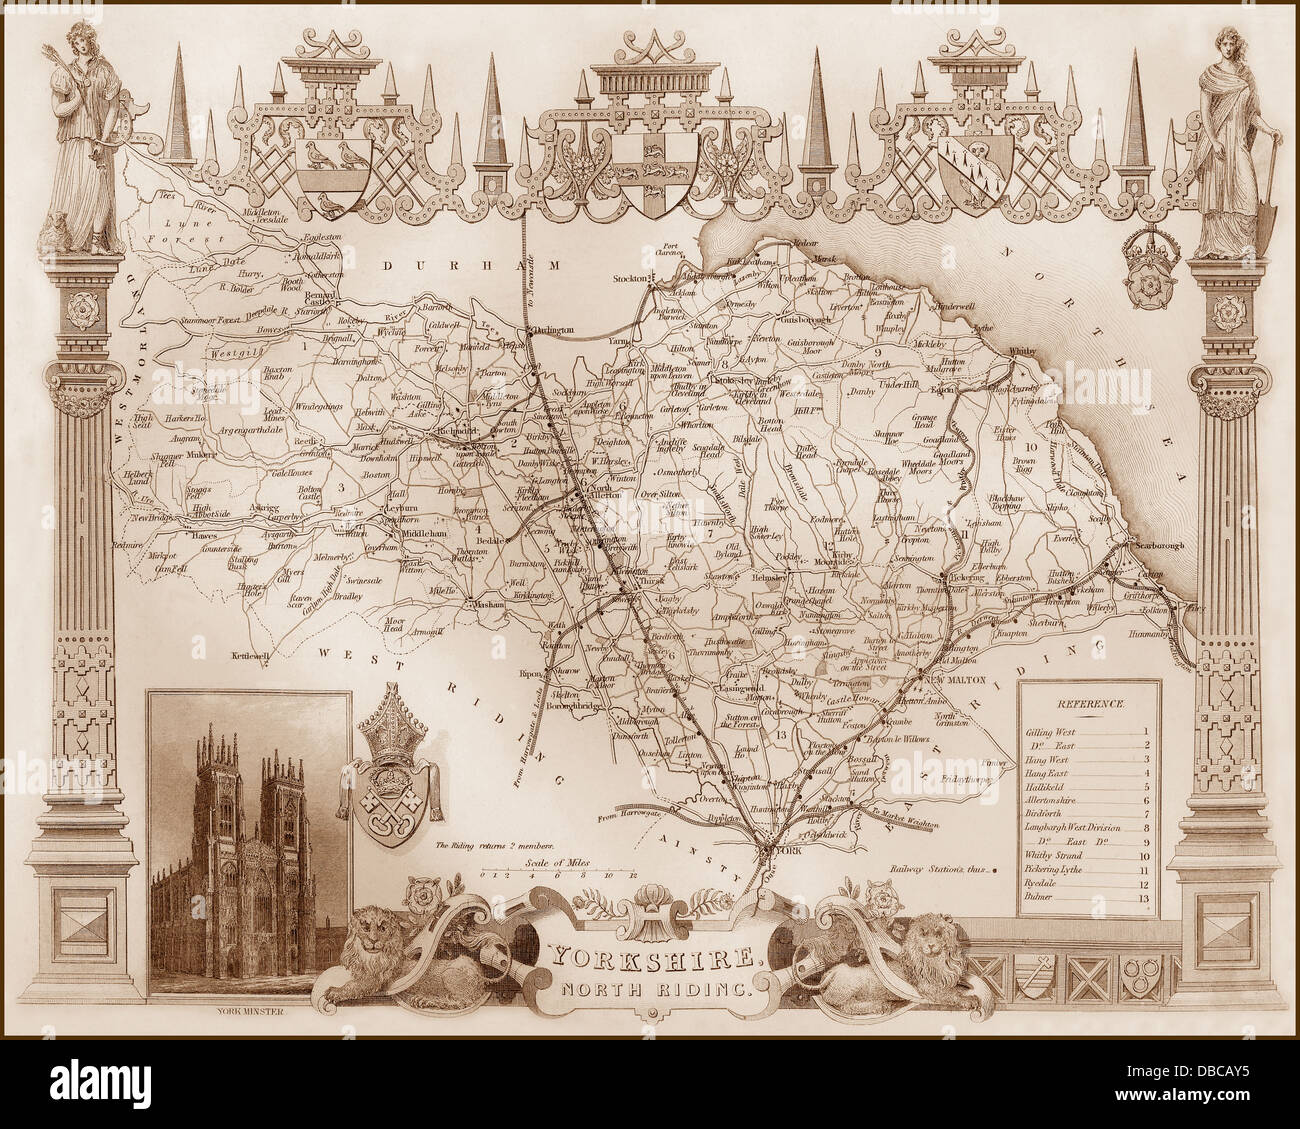 1840er Jahren viktorianische Karte von North Riding of Yorkshire Stockfoto